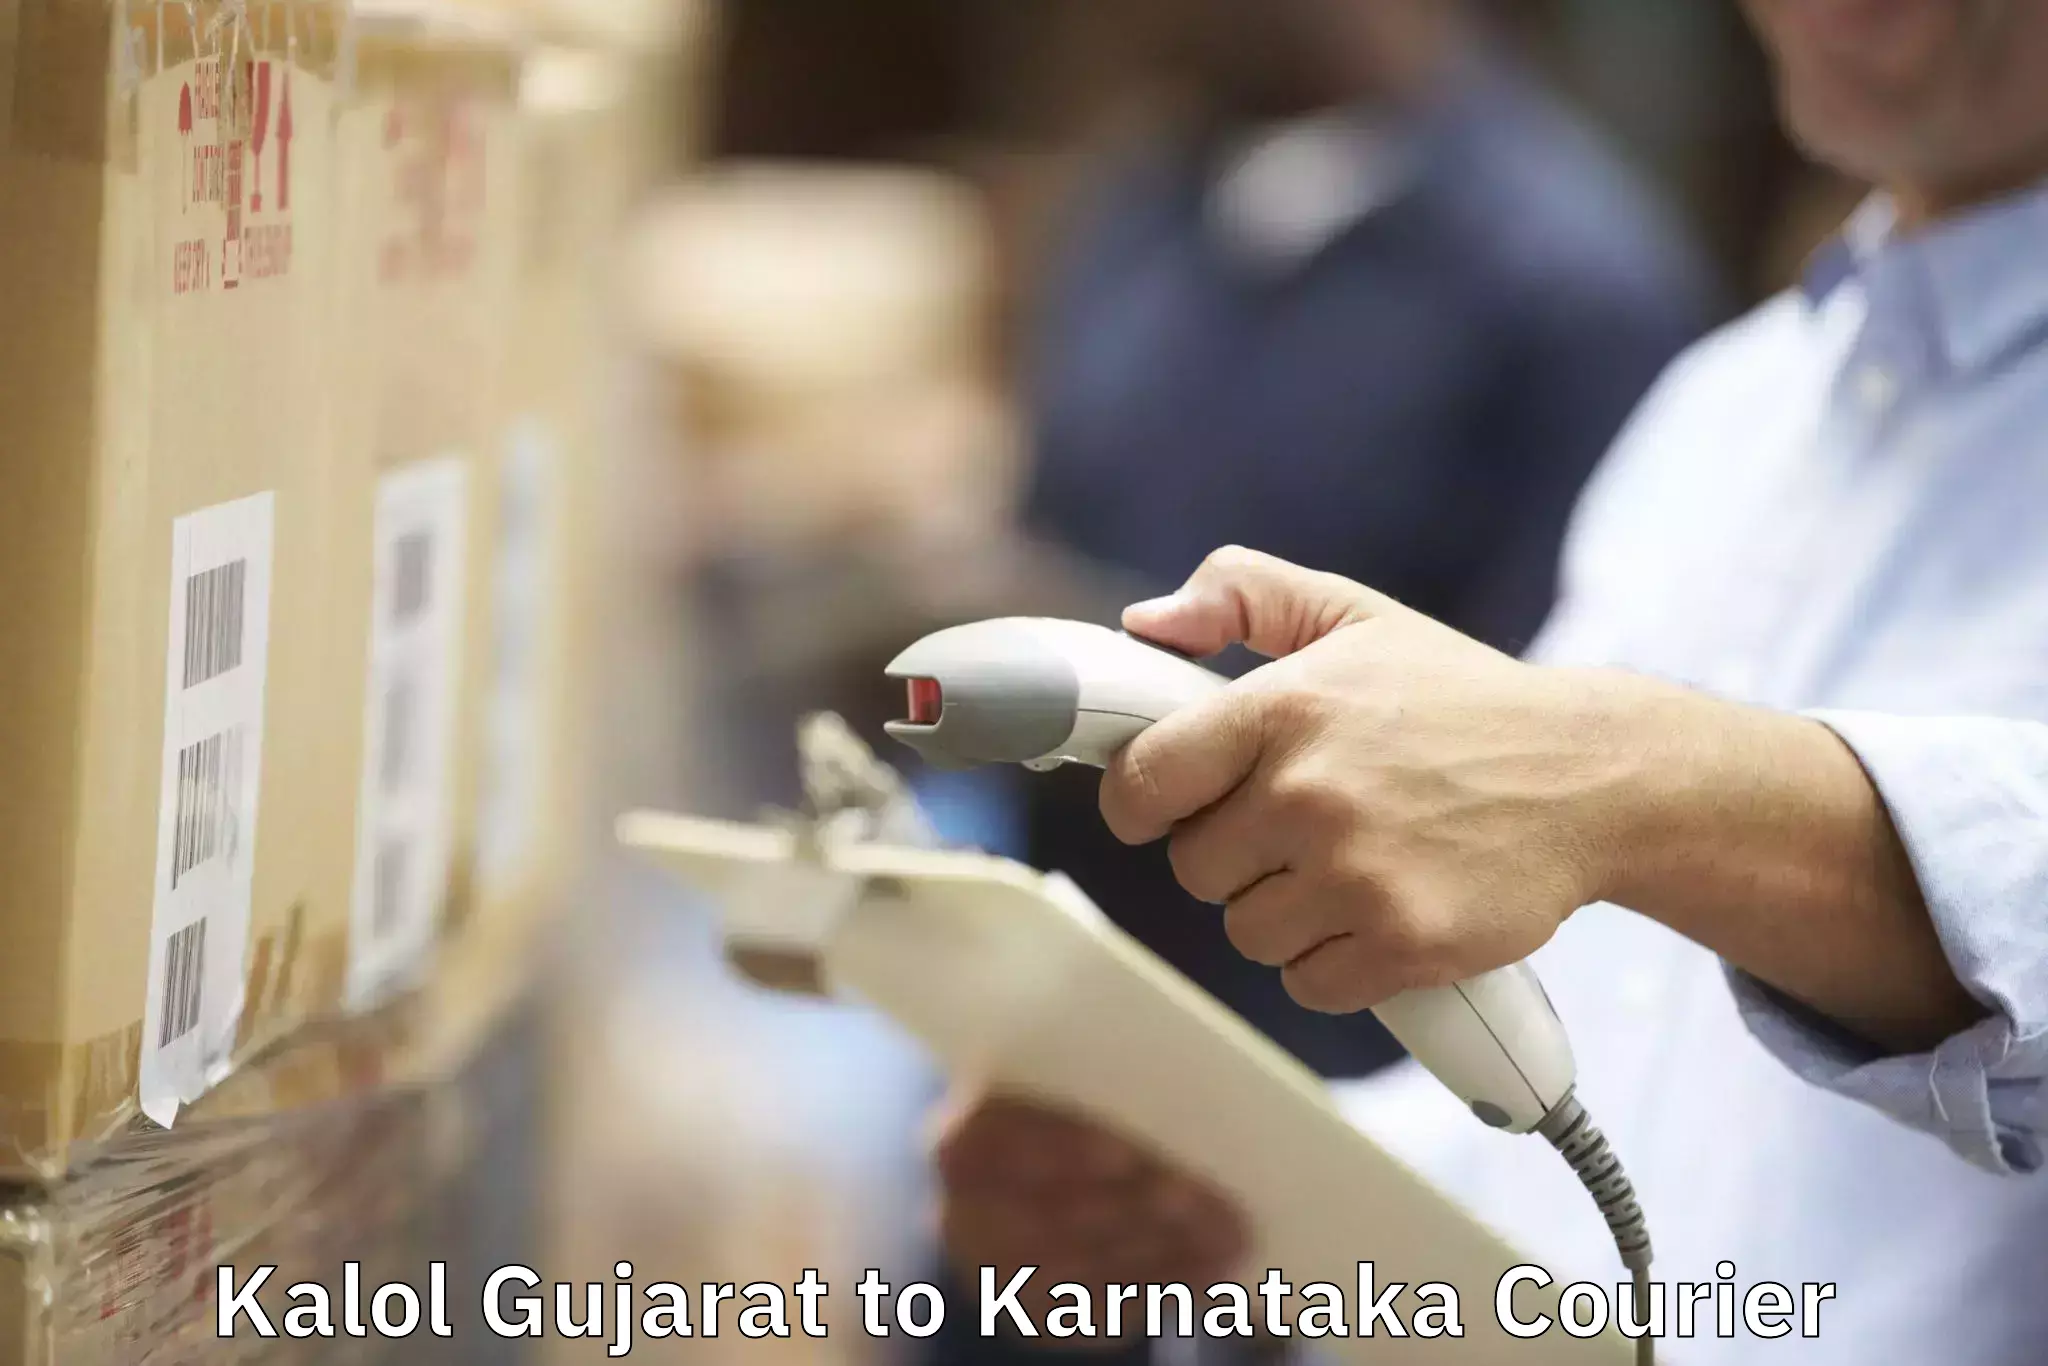 Specialized moving company Kalol Gujarat to Channarayapatna